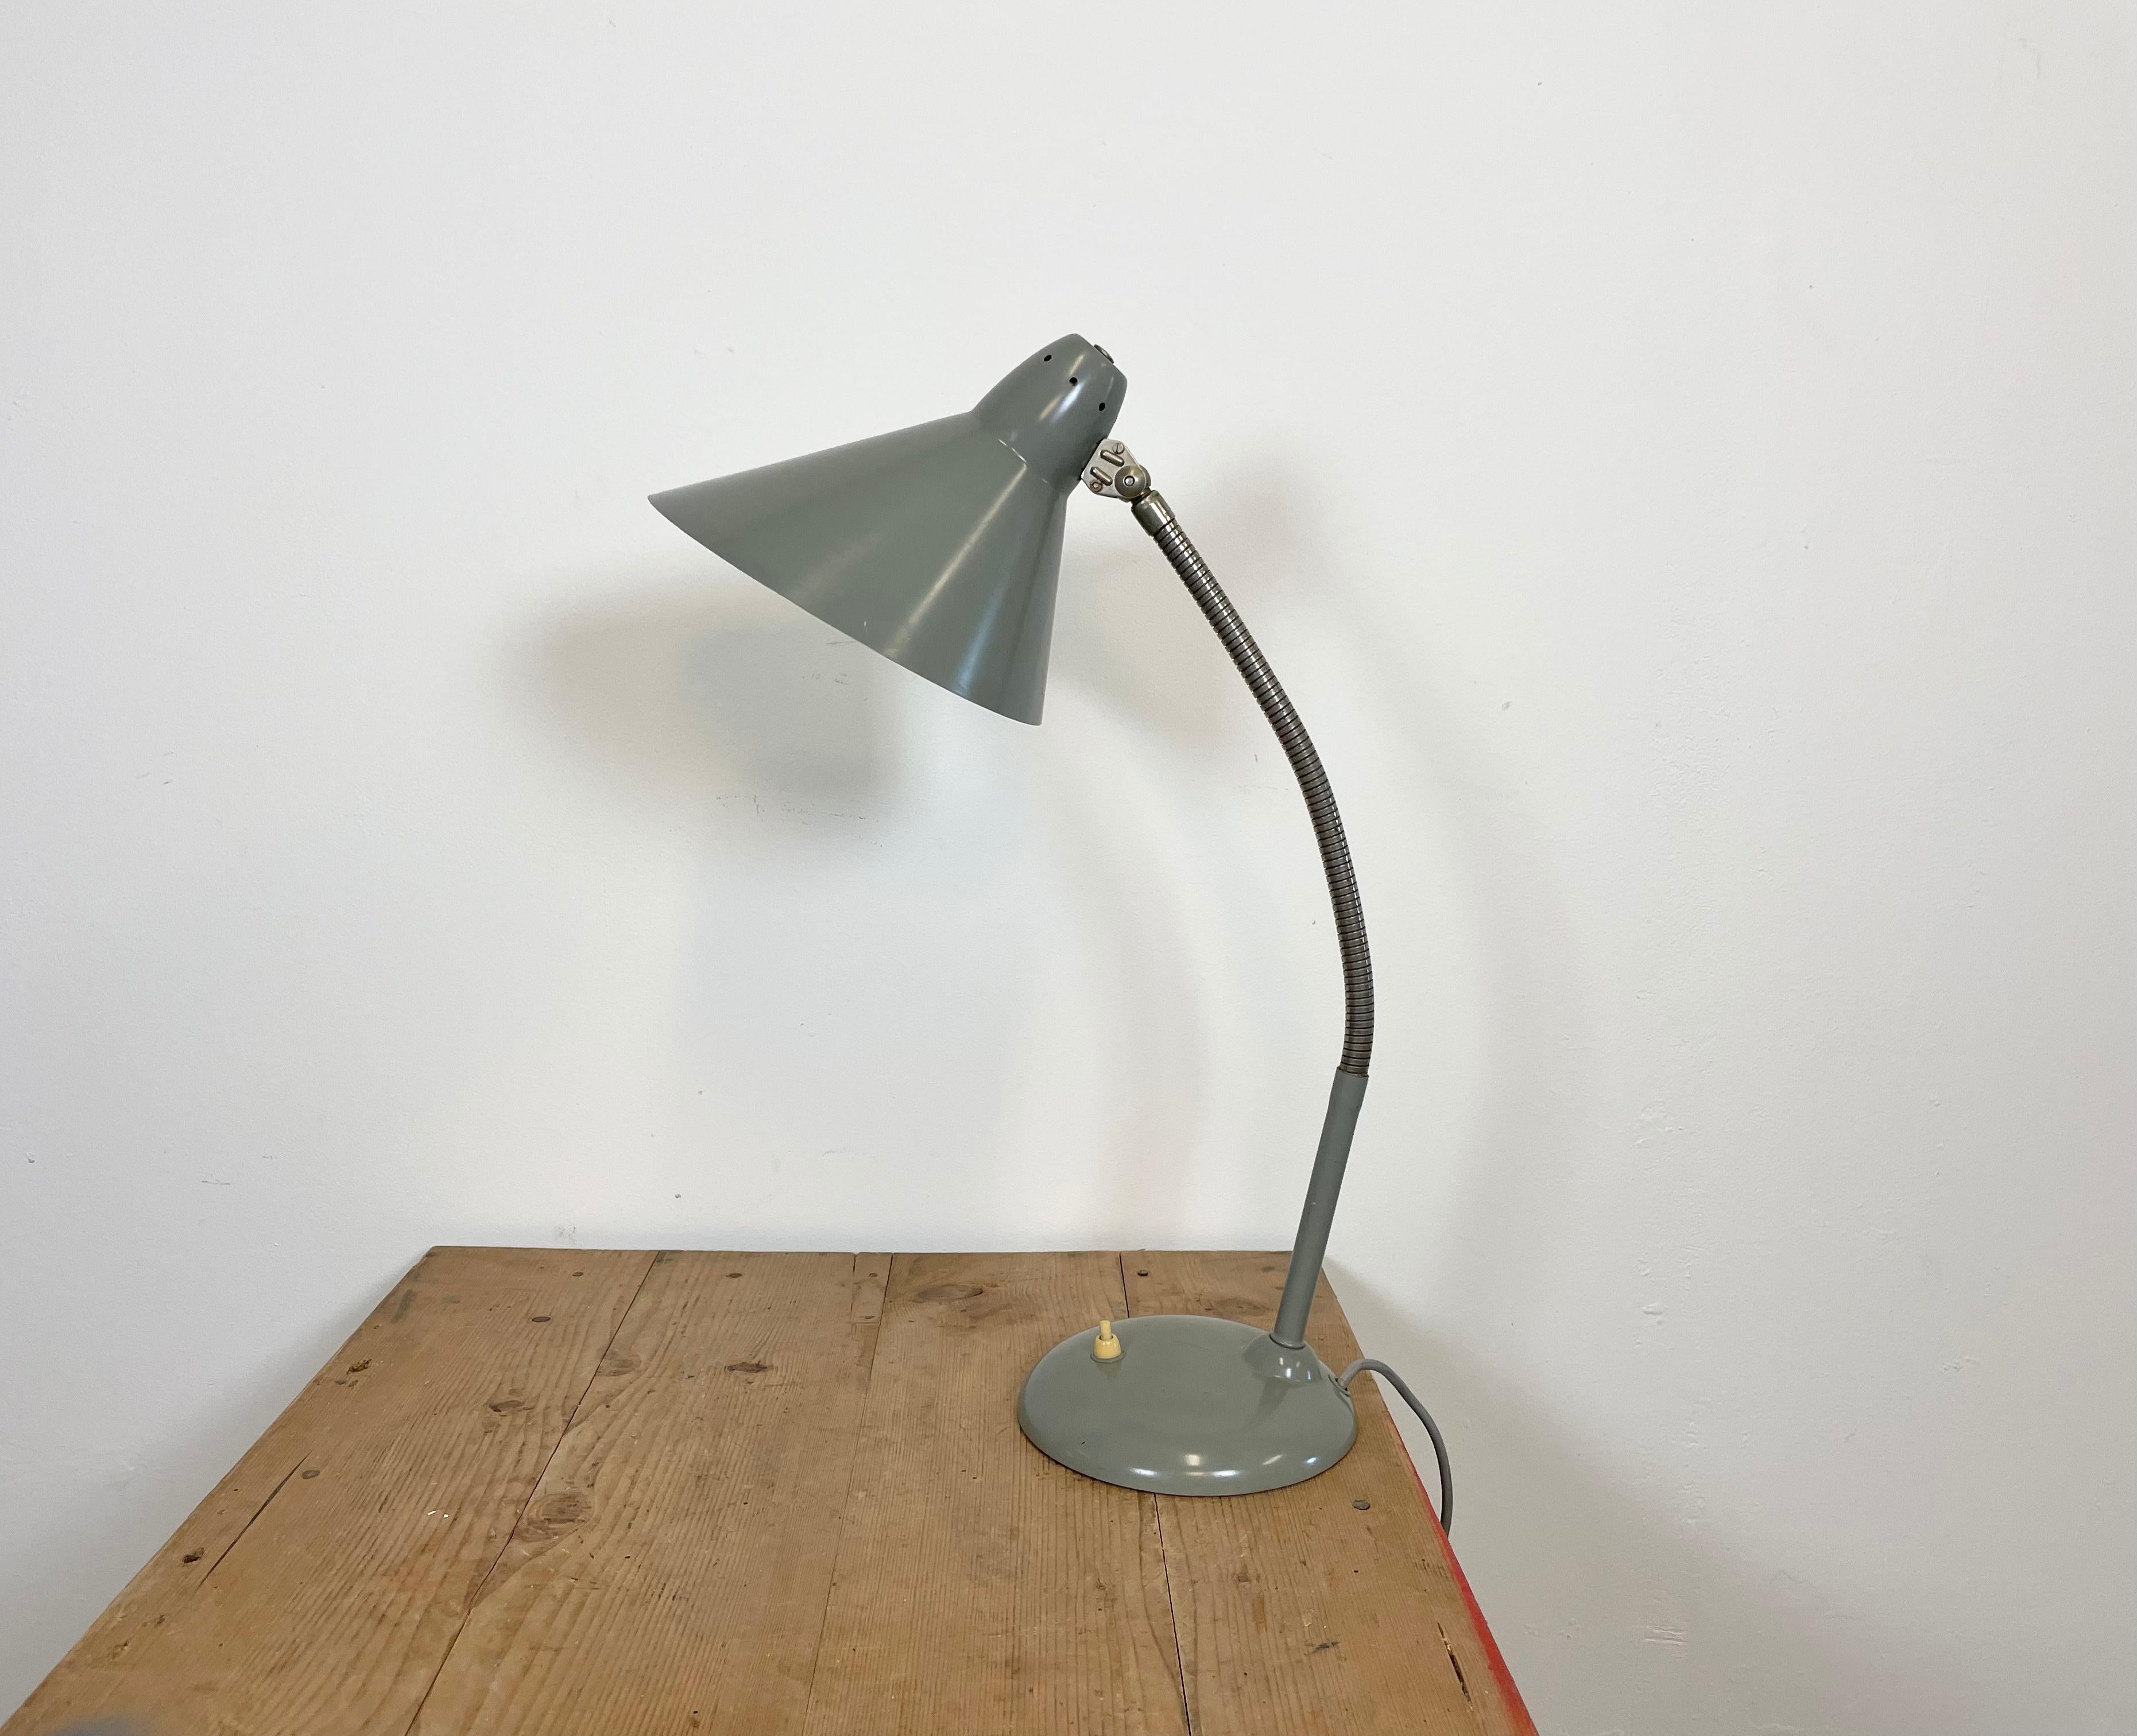 Diese Schreibtischlampe aus den 1960er Jahren wurde von Hala Zeist in den Niederlanden entworfen und hergestellt. Sie hat einen verchromten, flexiblen Arm, einen grauen Metallsockel und einen Schirm.
Die Fassung erfordert E 27-Glühbirnen. Der